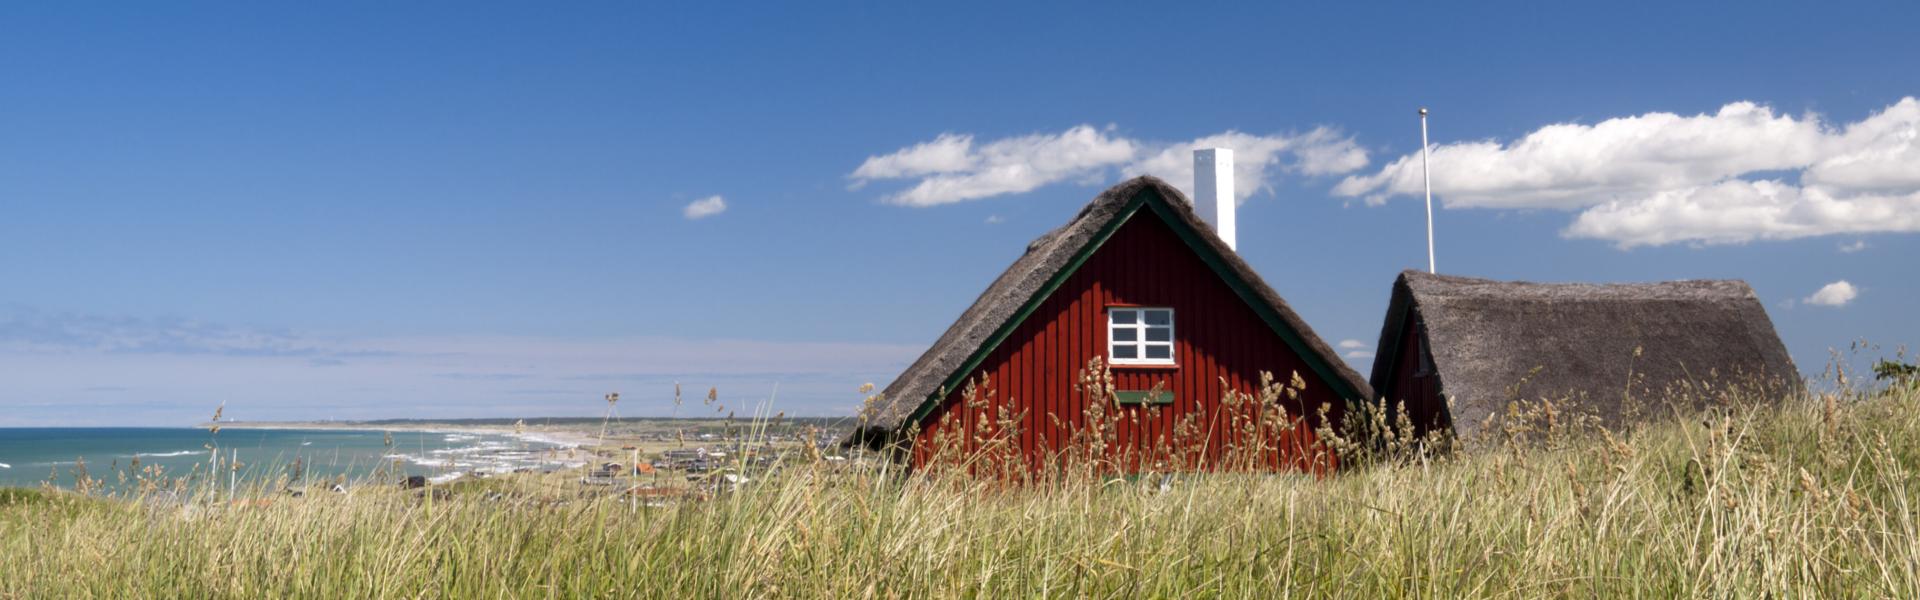 Luxus Ferienhäuser und Ferienwohnungen in Dänemark - BELLEVUE Ferienhaus